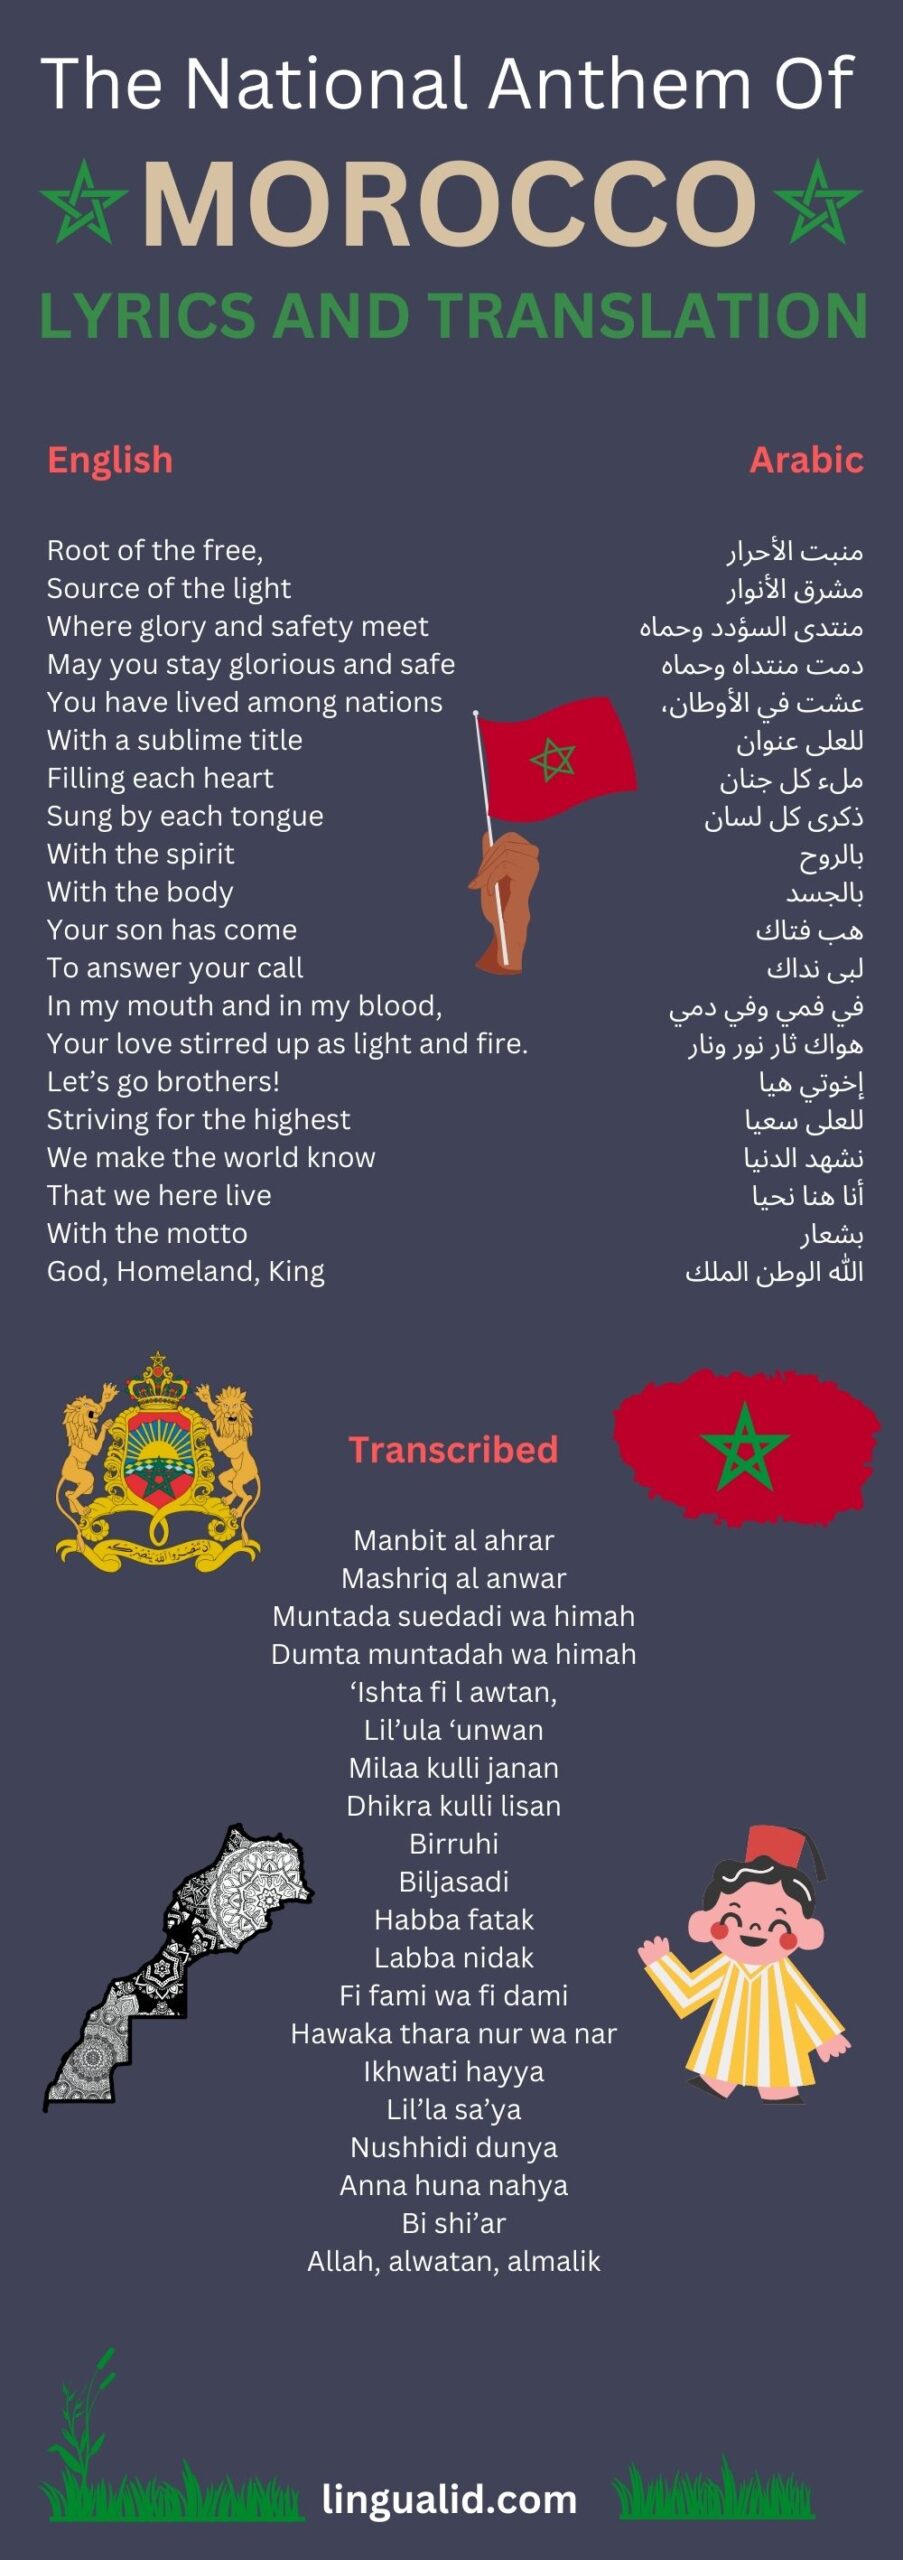 The national anthem of Morocco + Arabic lyrics and English translation